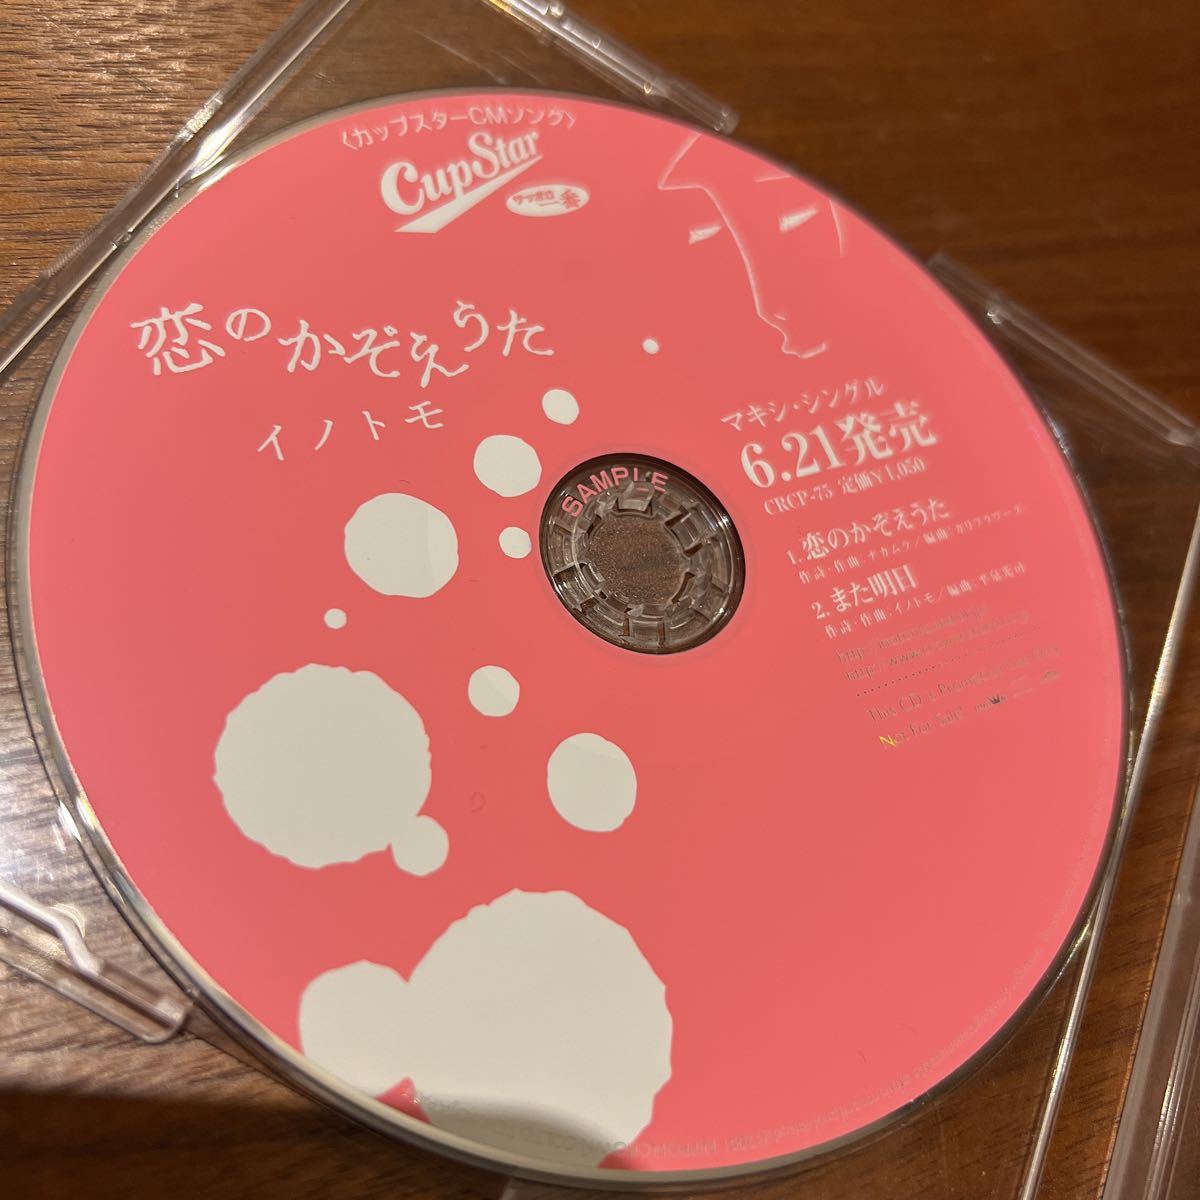 CDシングルイノトモ恋のかぞえうたカップスターCMソング_画像2